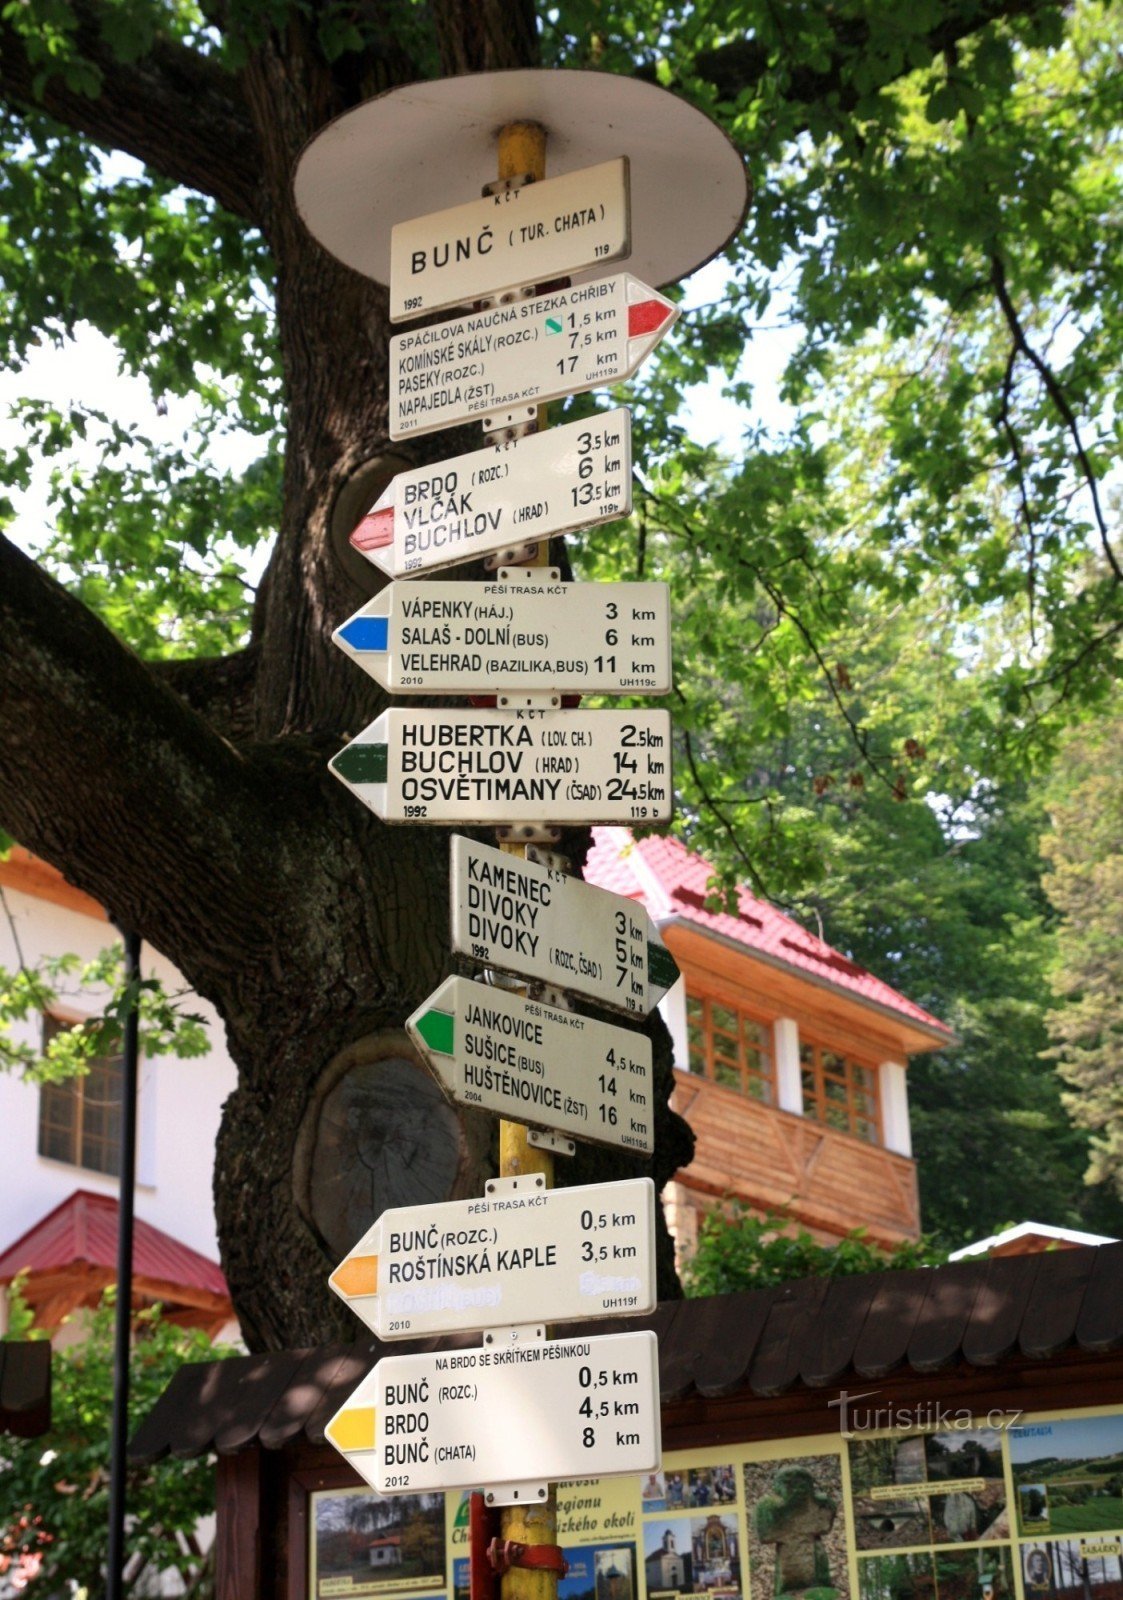 Turisztikai útkereszteződés Bunč-chata